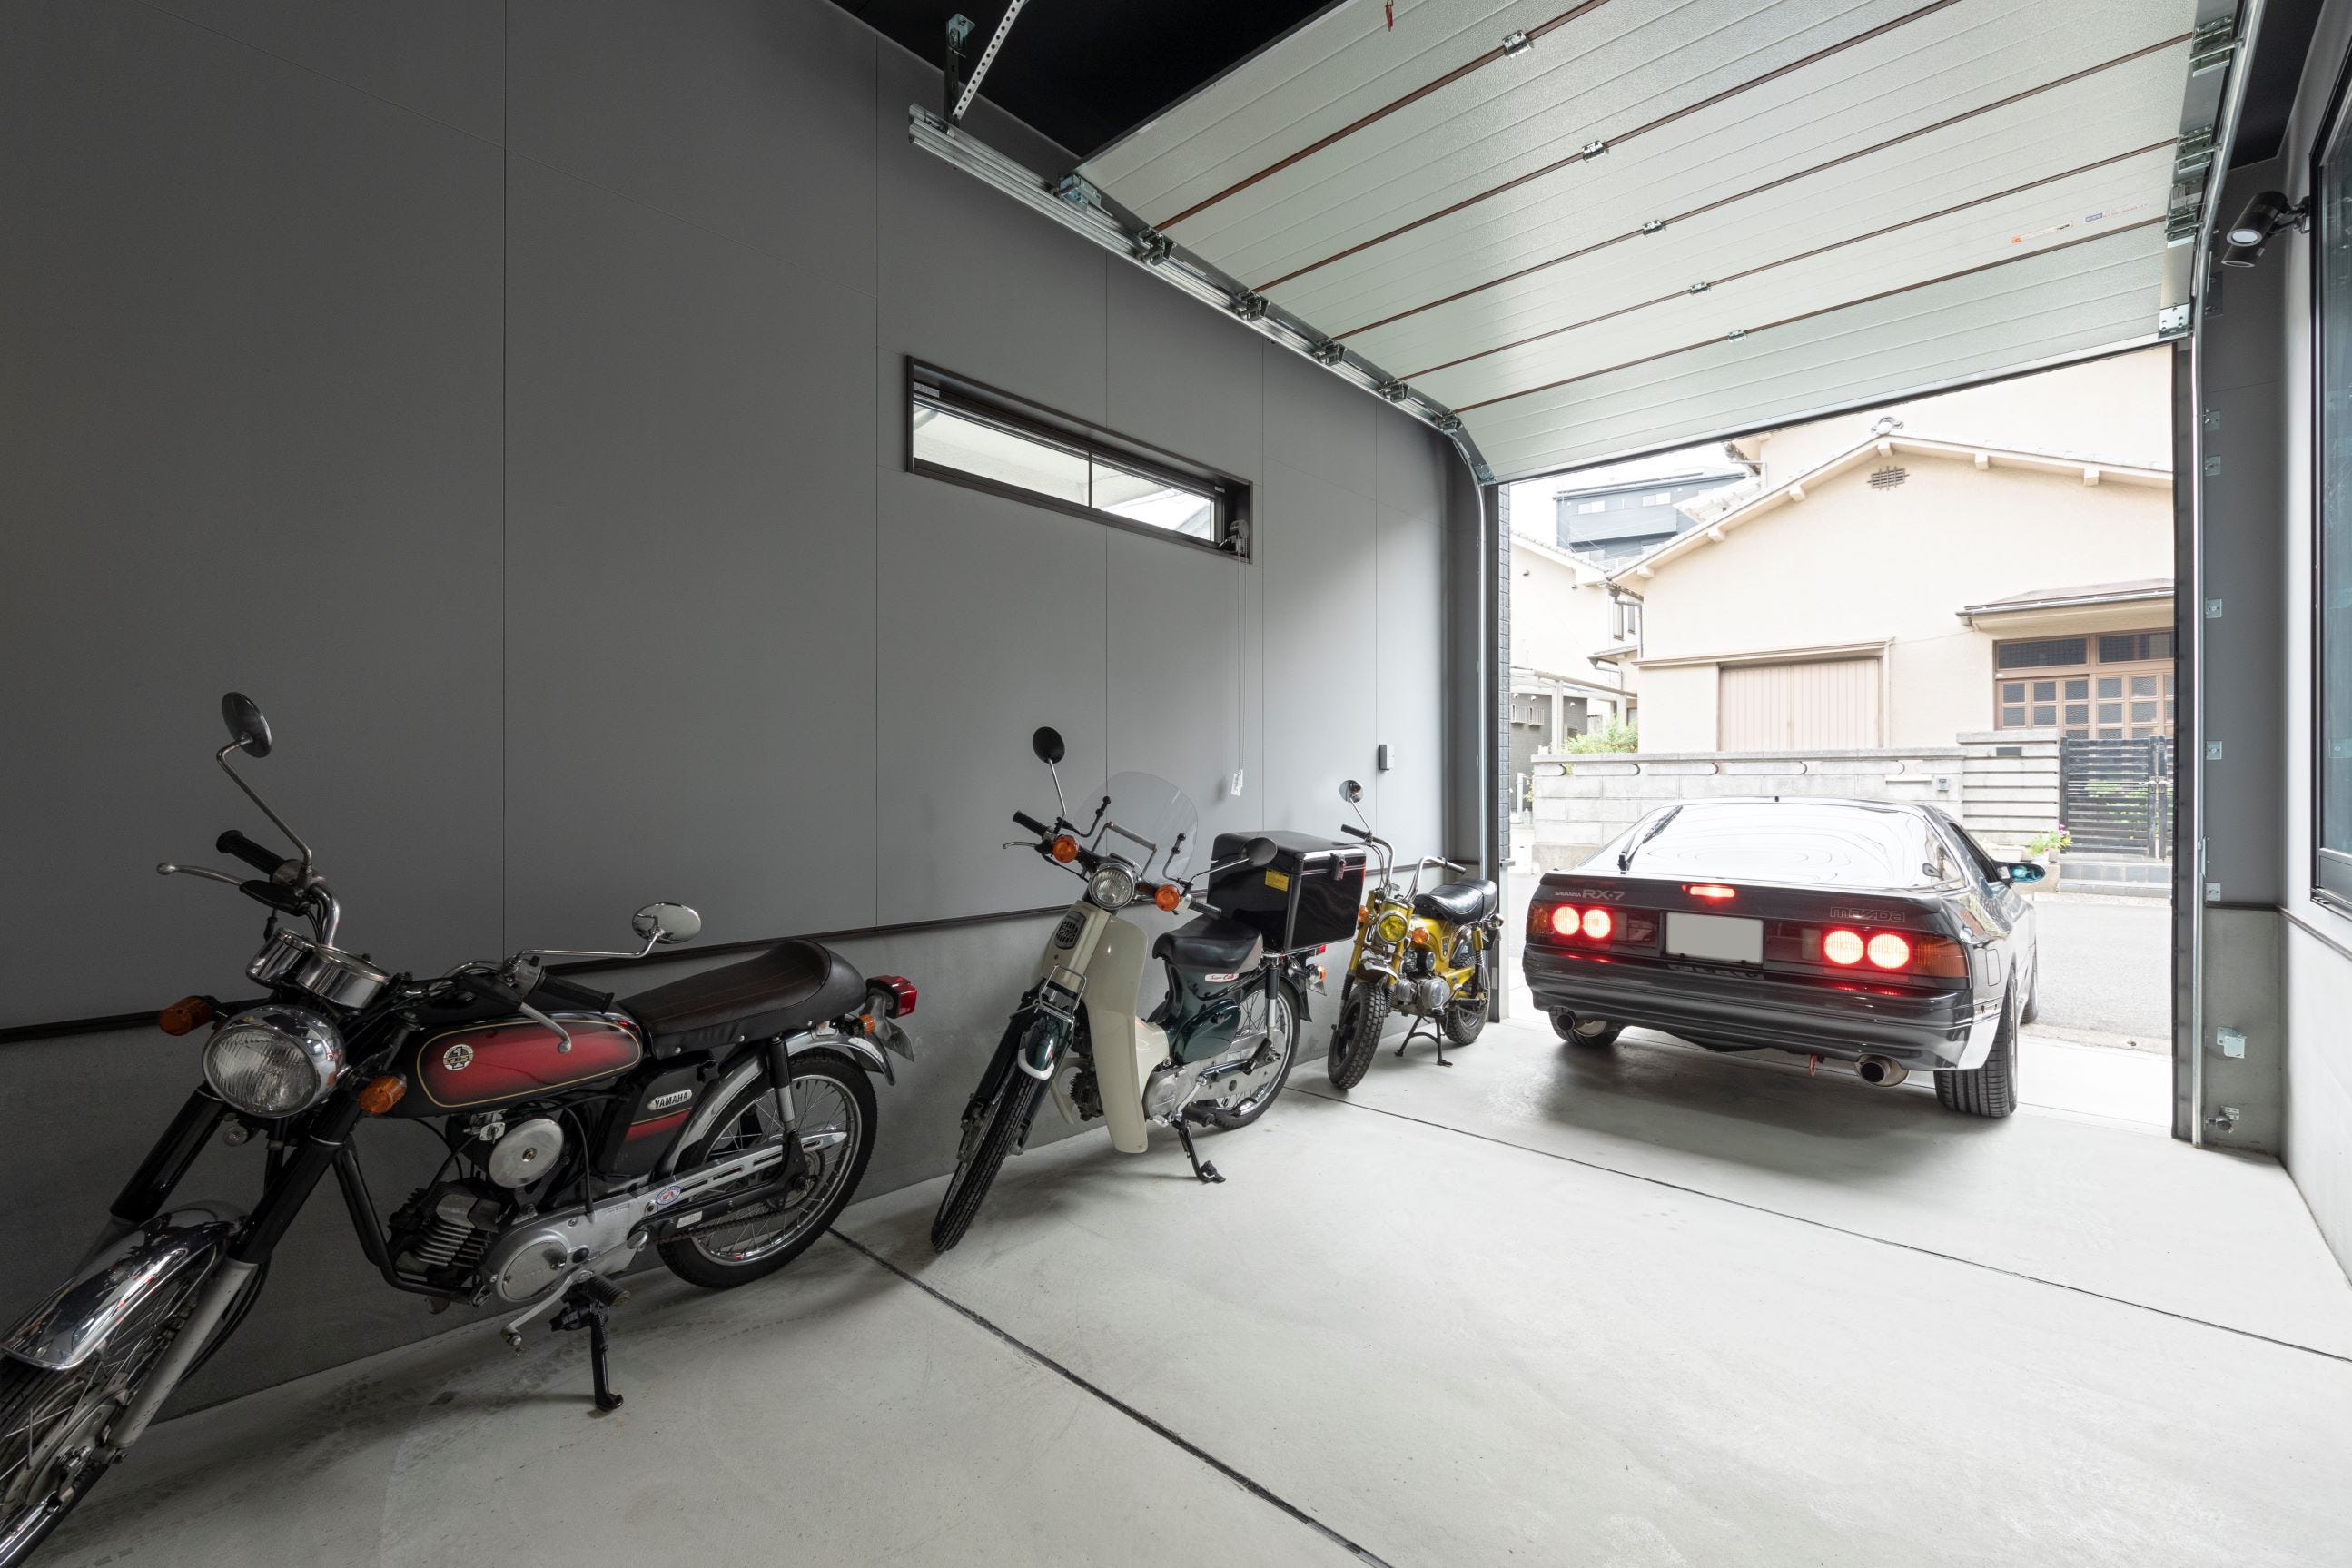 愛車は勿論、バイク2台を収めることのできる自慢のガレージ。
ちょっとした整備もガレージ内で行えます。
シャッター開閉はリモコン式なので、帰宅時も出発時もスムーズに出し入れ可能です。